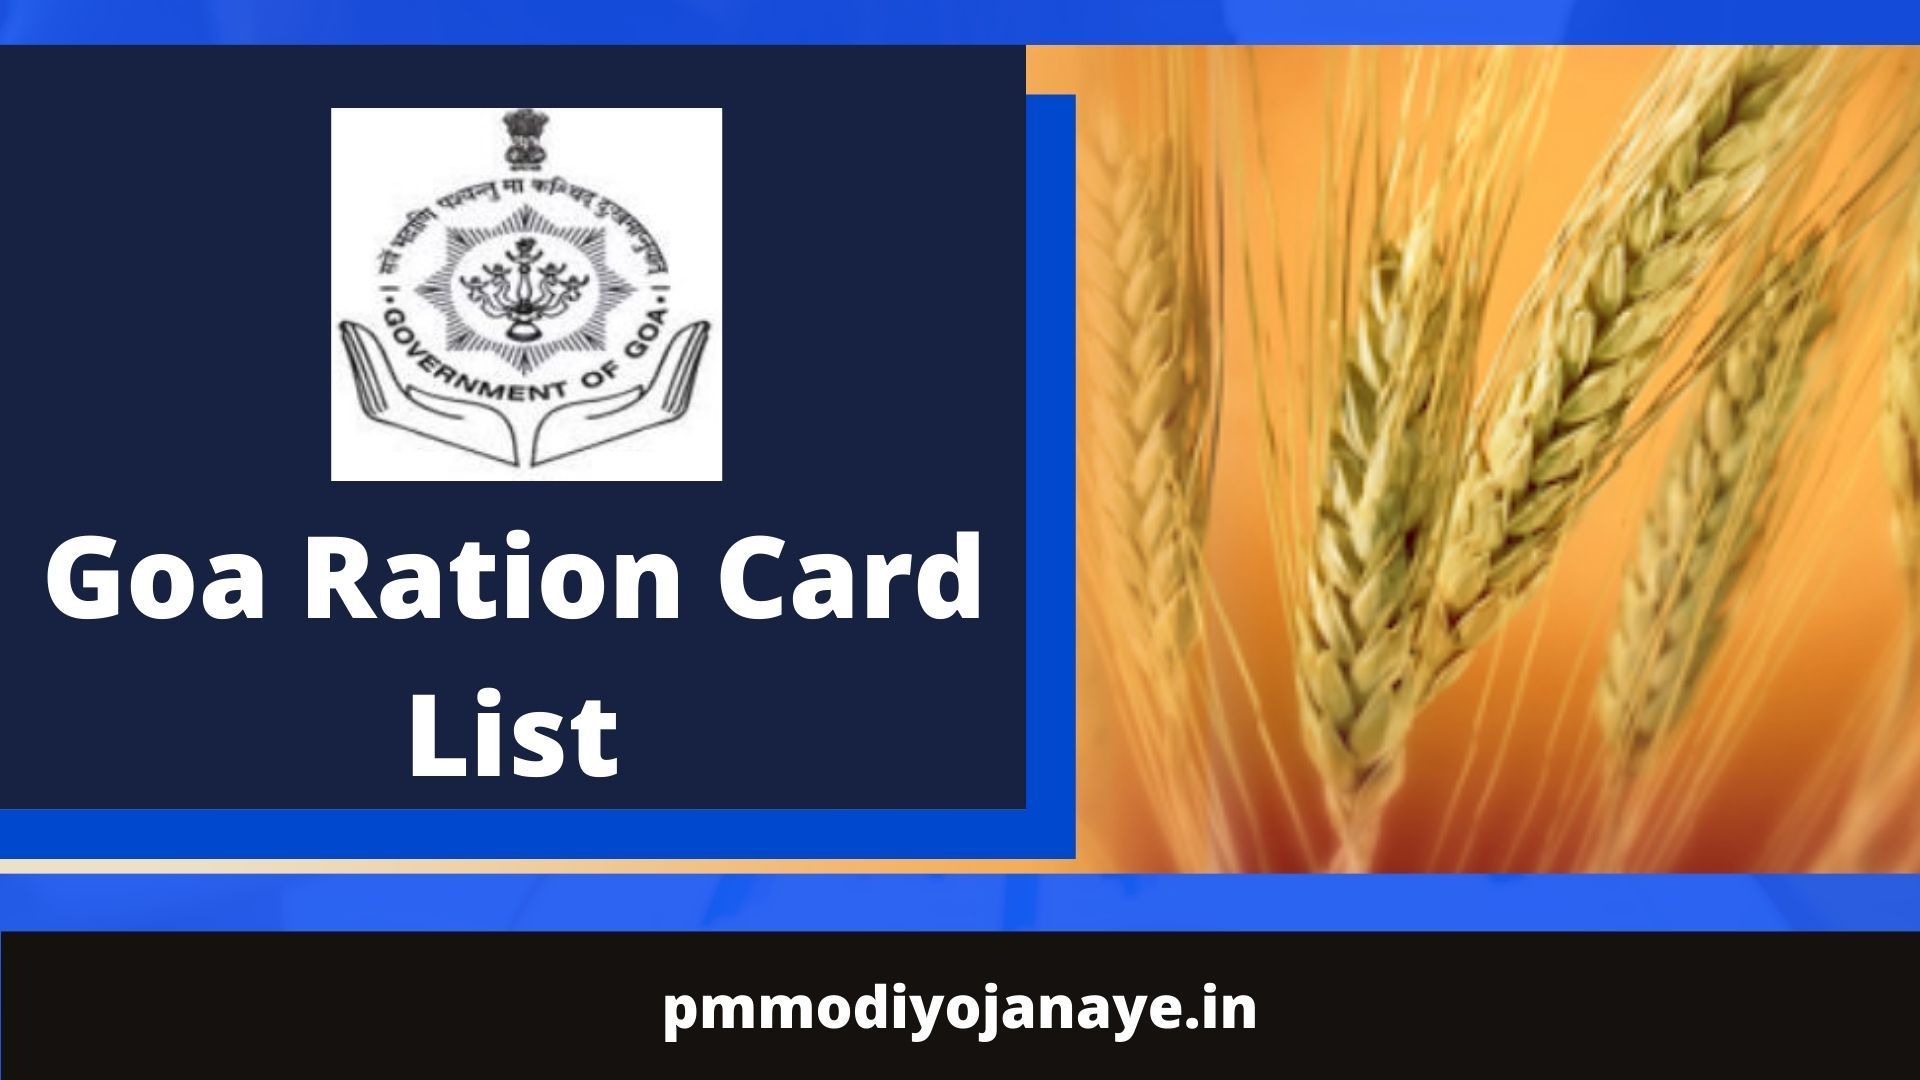 Goa Ration Card List